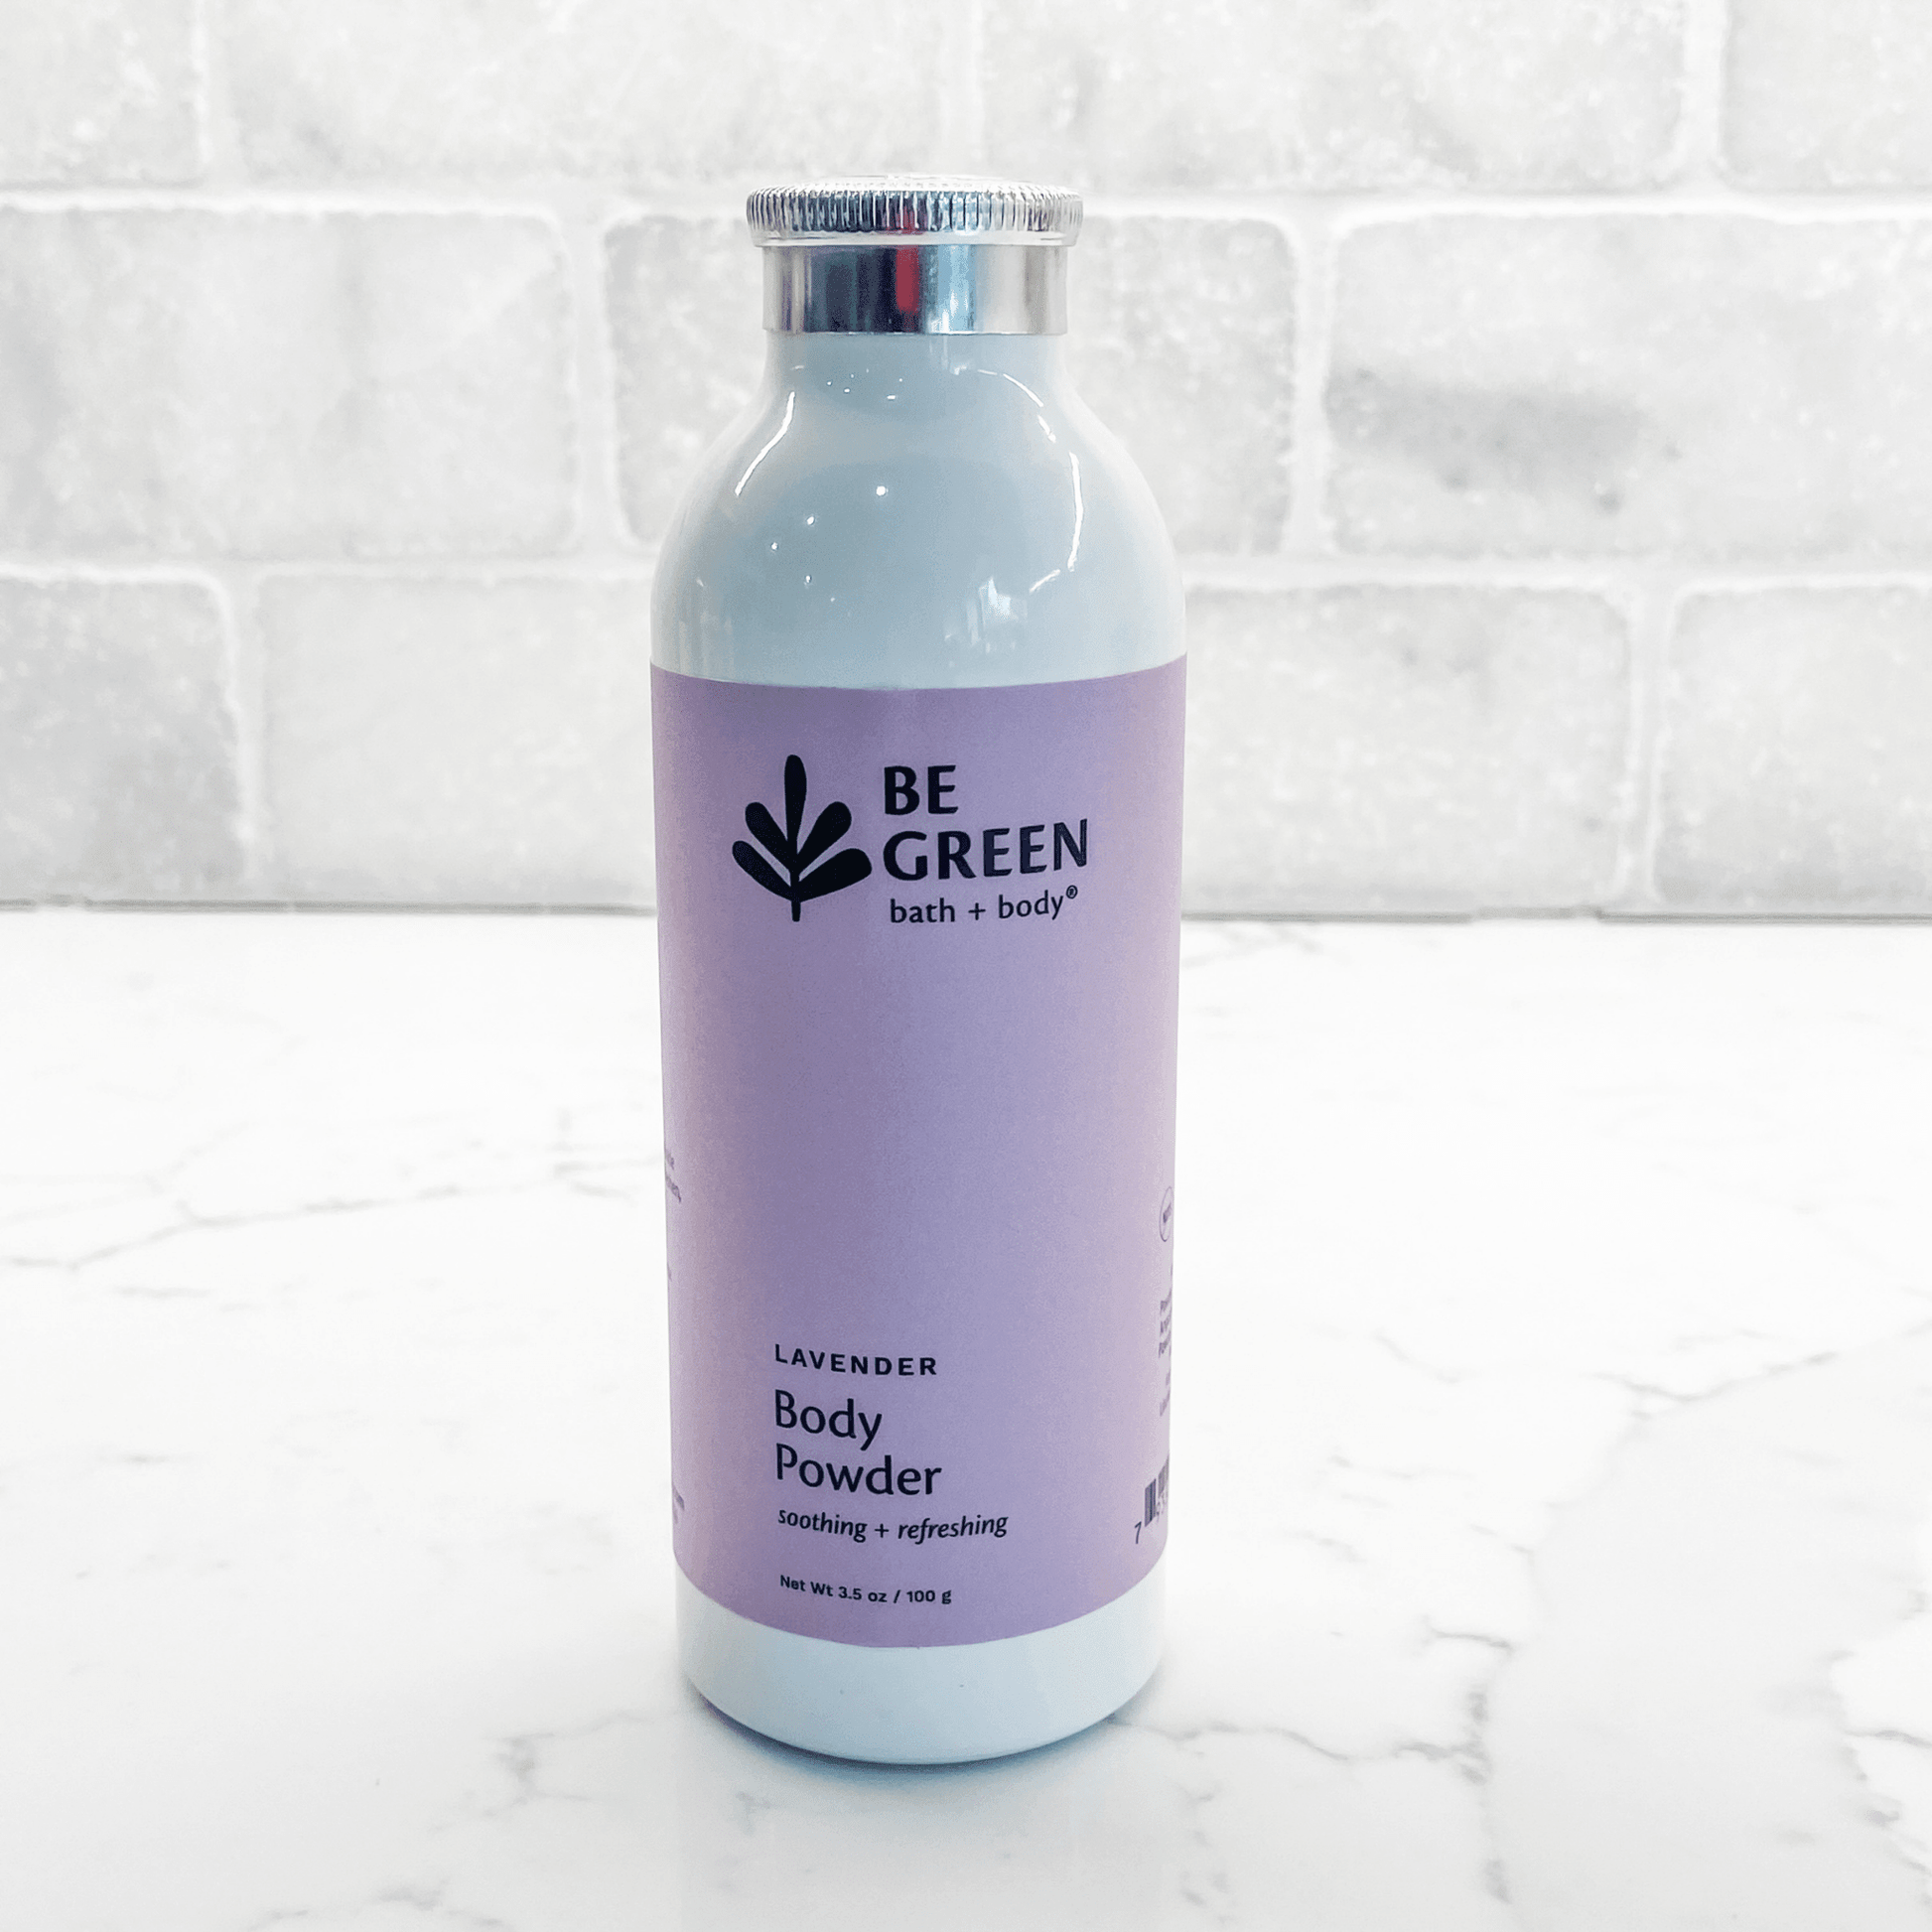 Be Green Bath and Body Powder- lavender powder